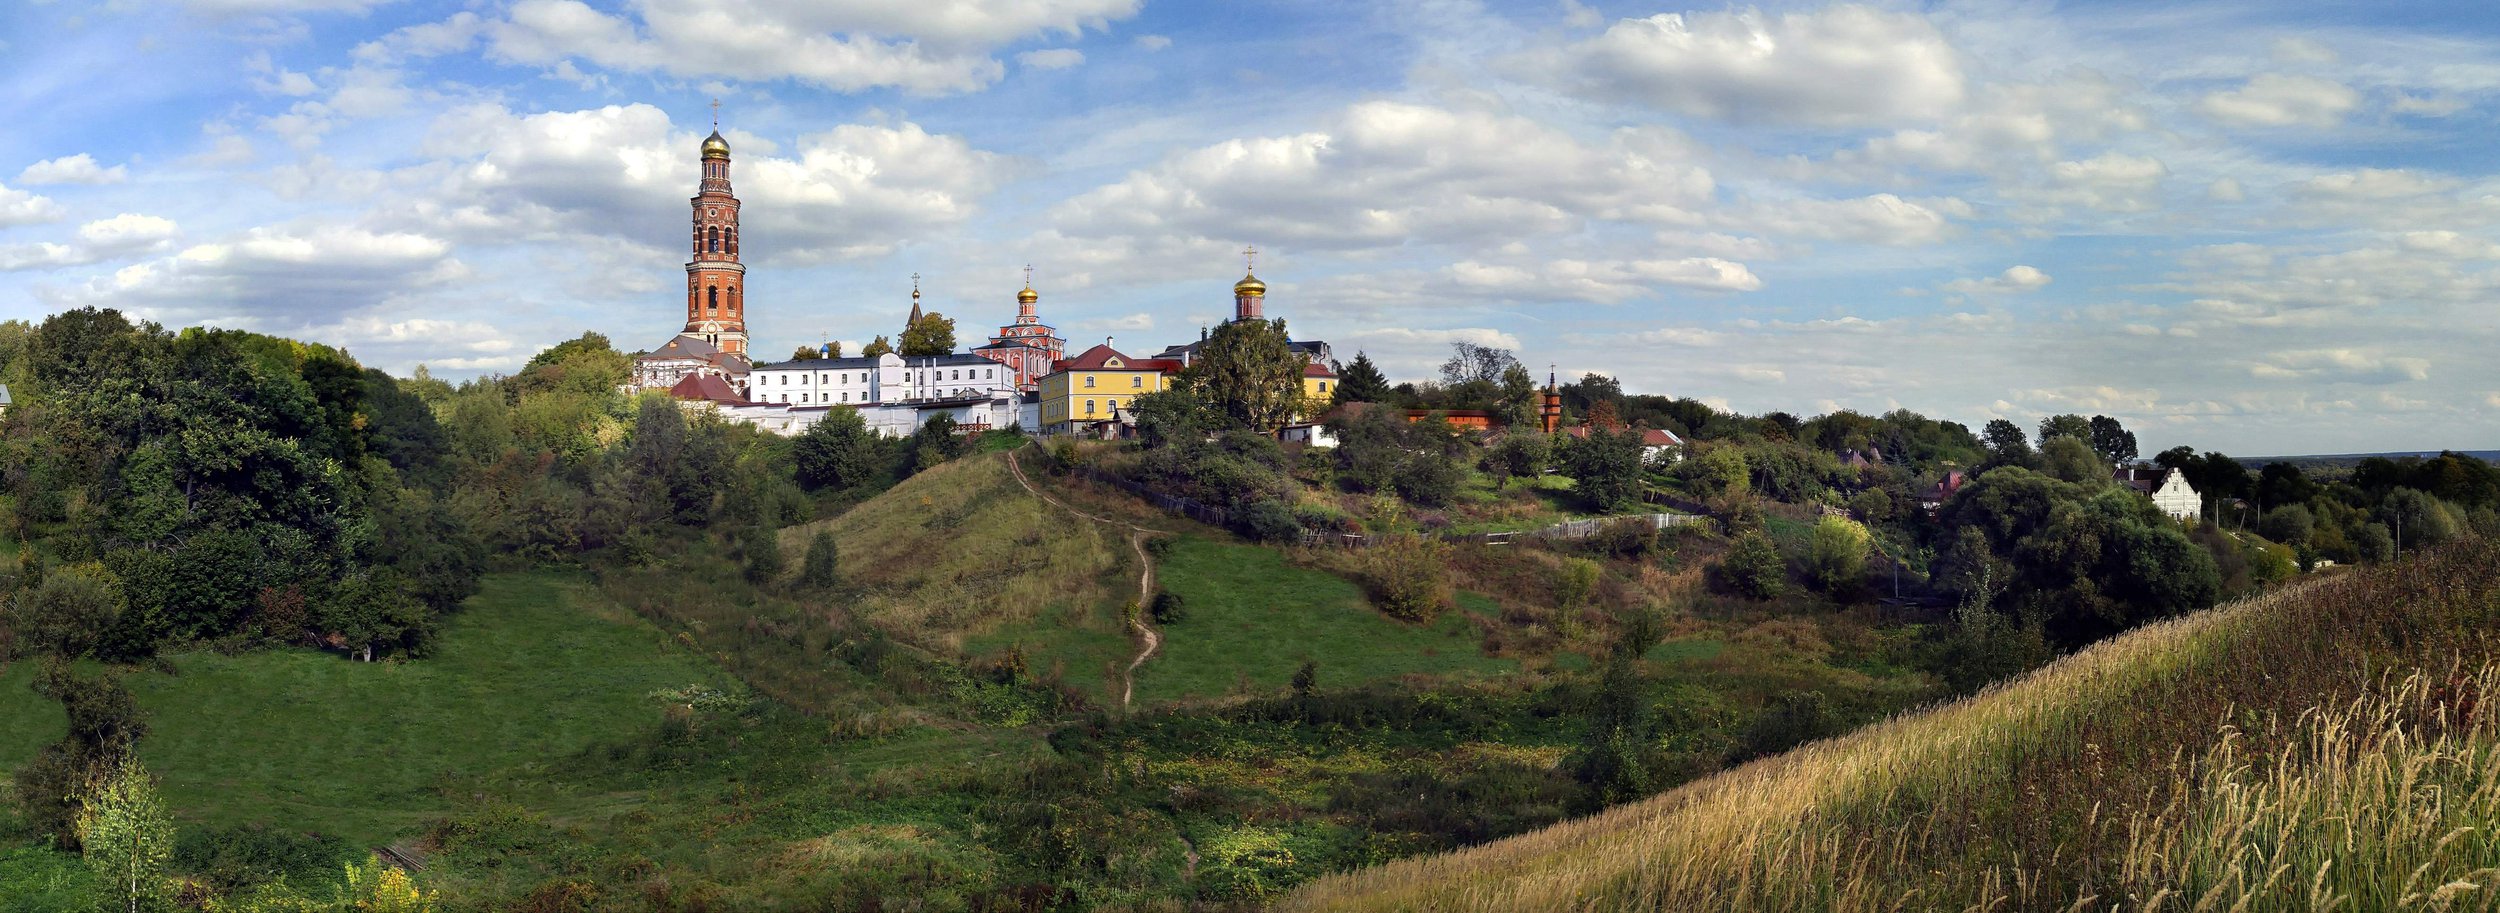 Пощуповский Иоанно-Богословский мужской монастырь